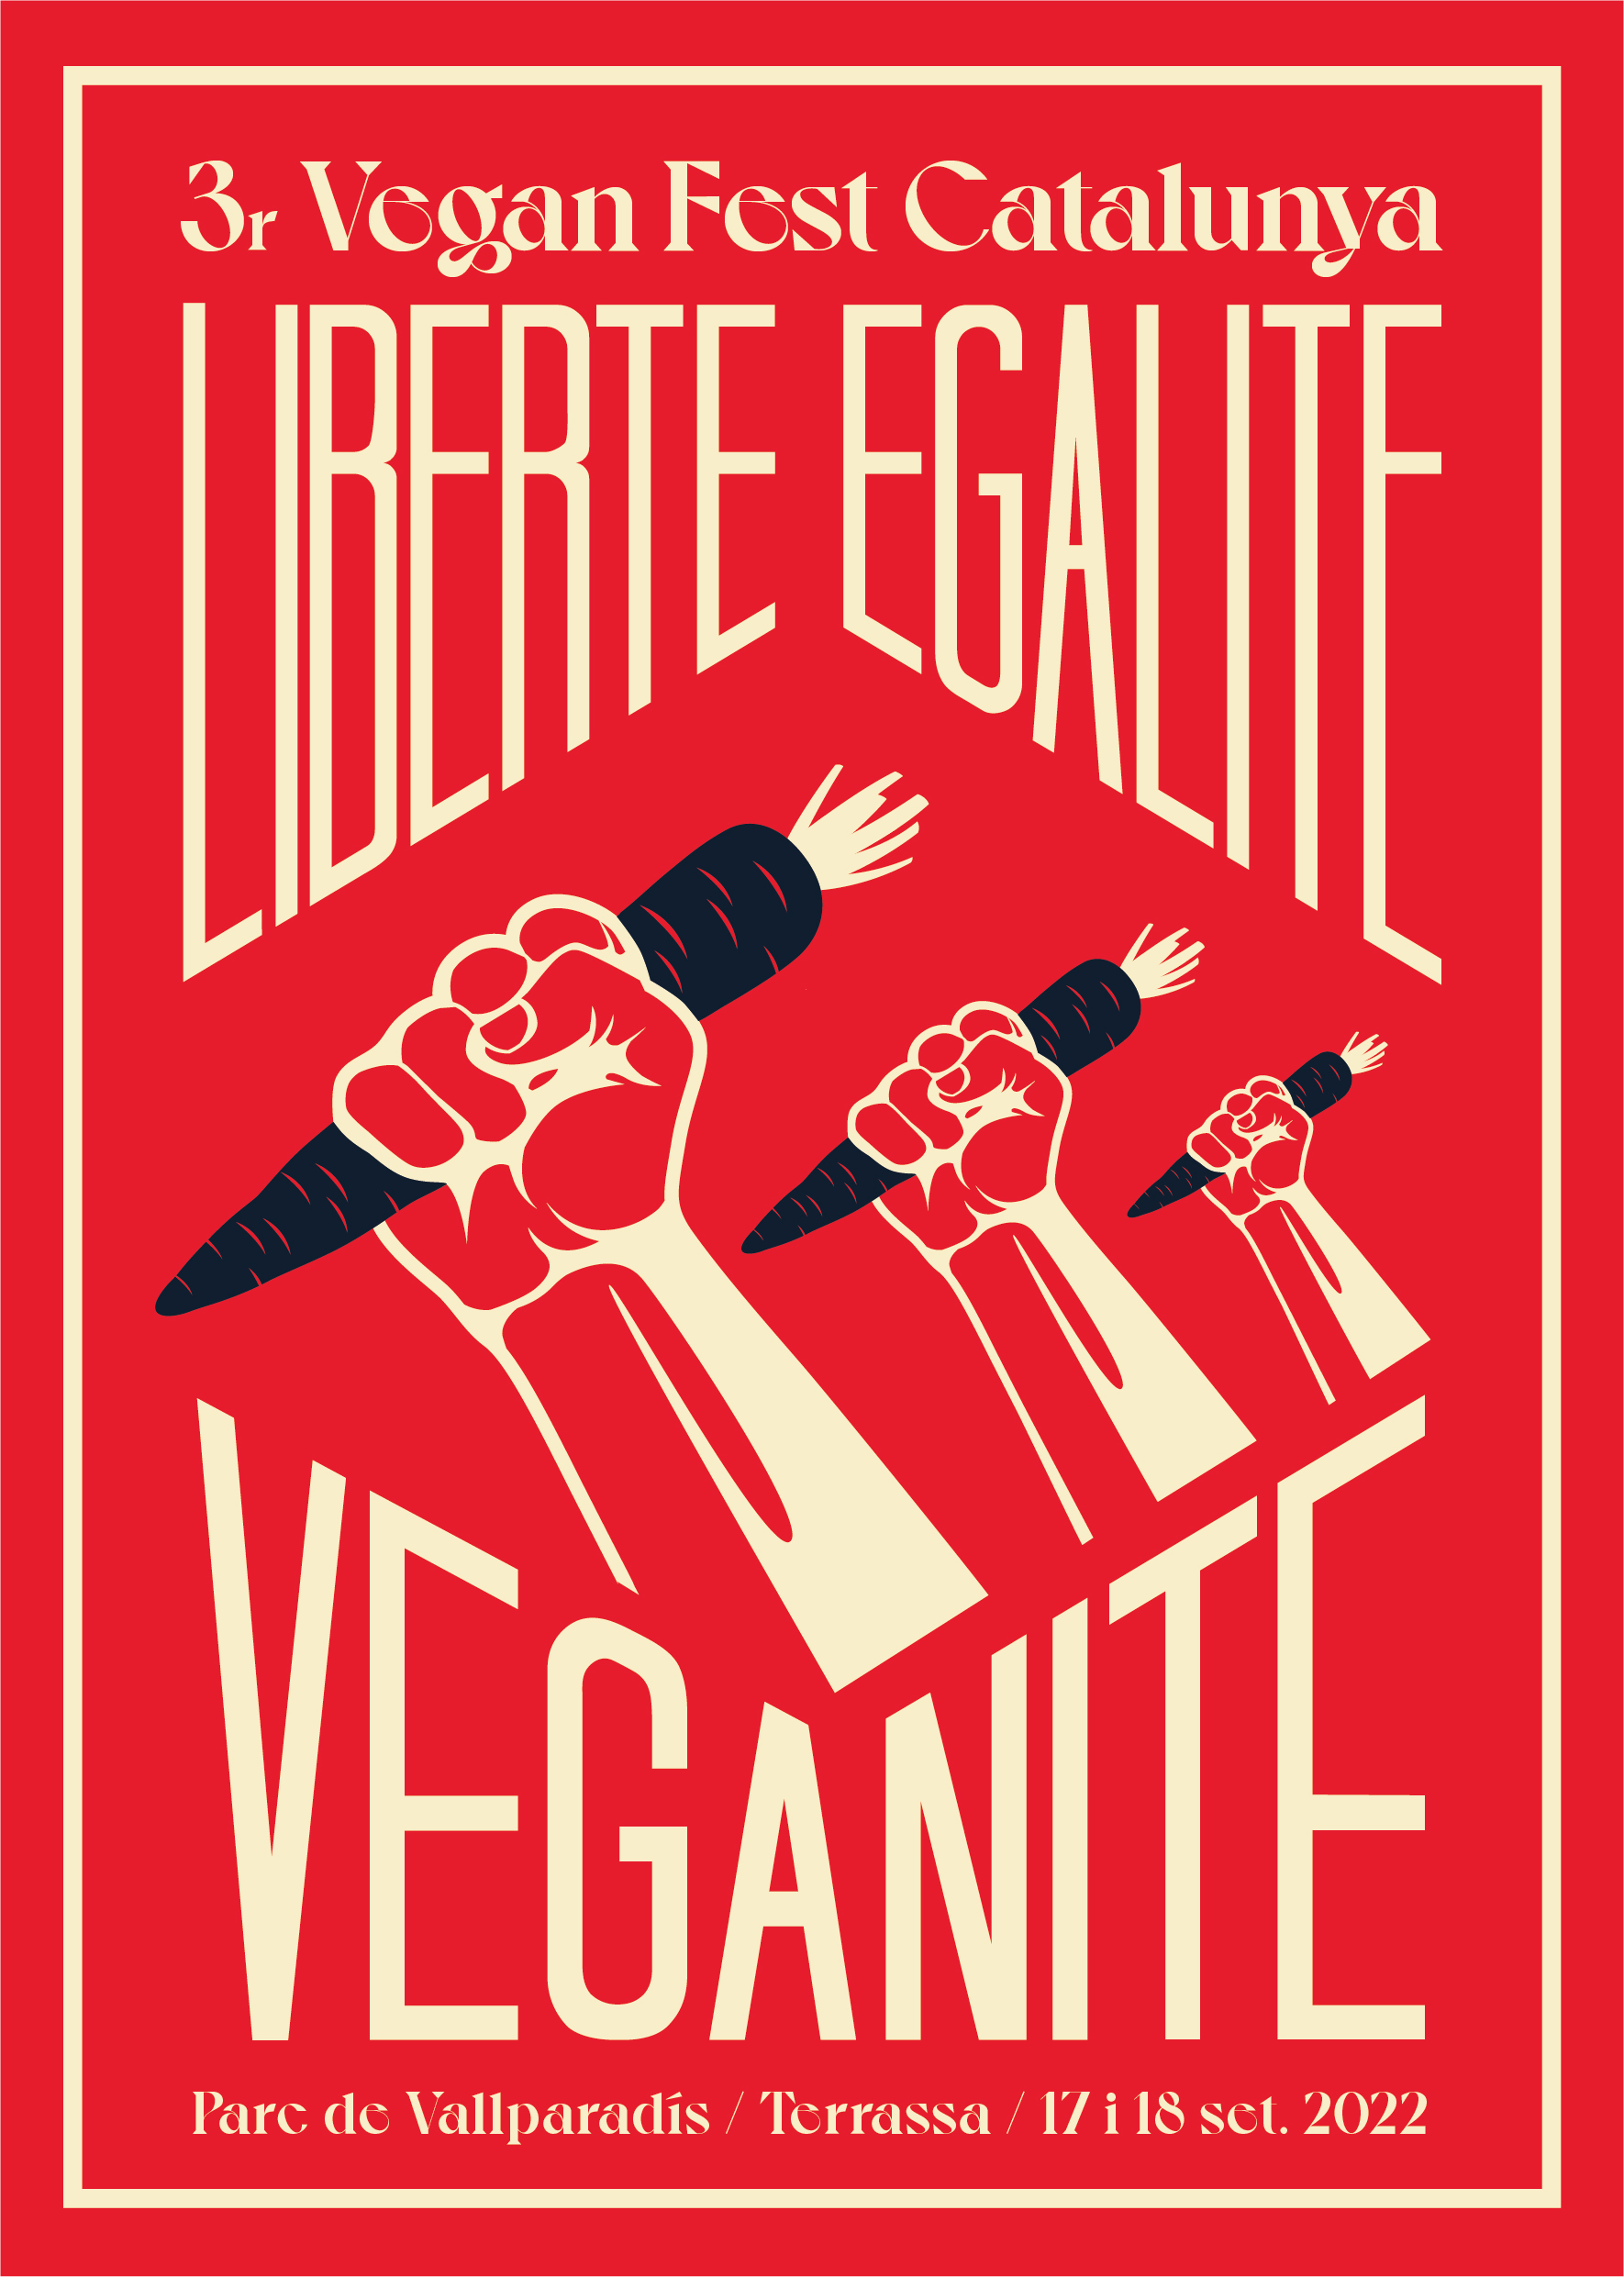 Print Veganite_3